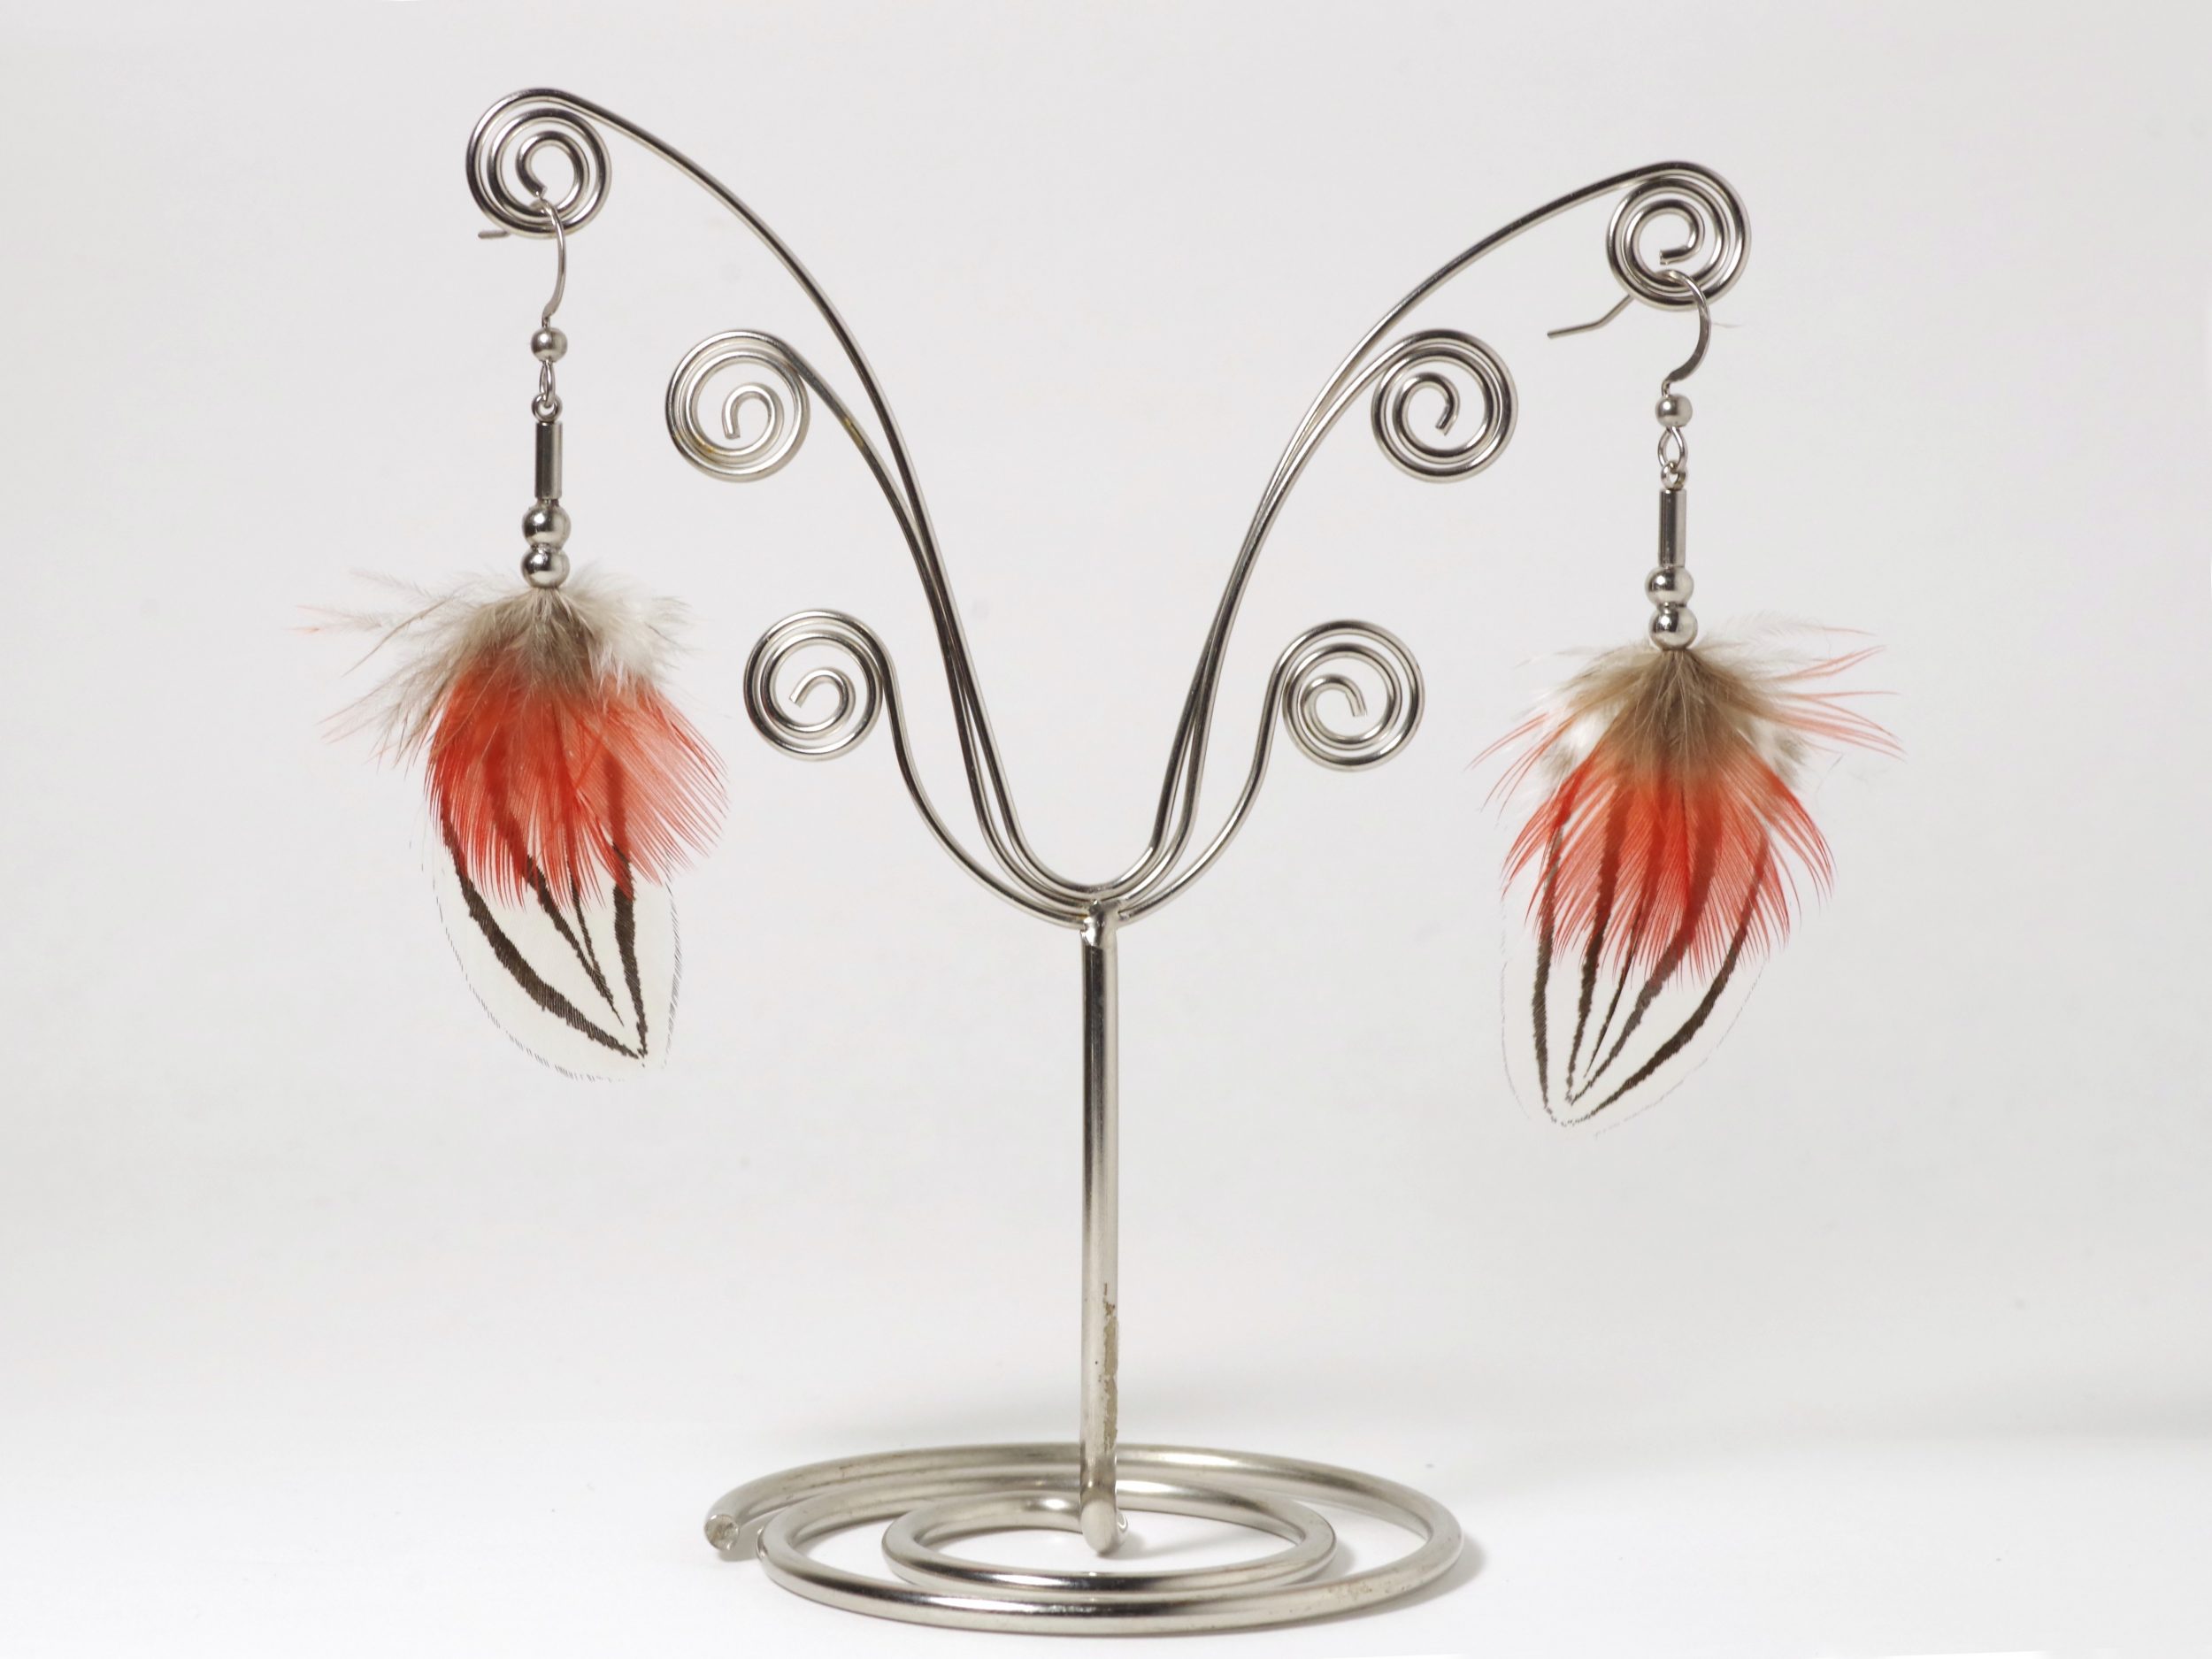 Une paire de boucles d'oreilles avec des plumes d'un rouge éclatant et des plumes blanches et noires